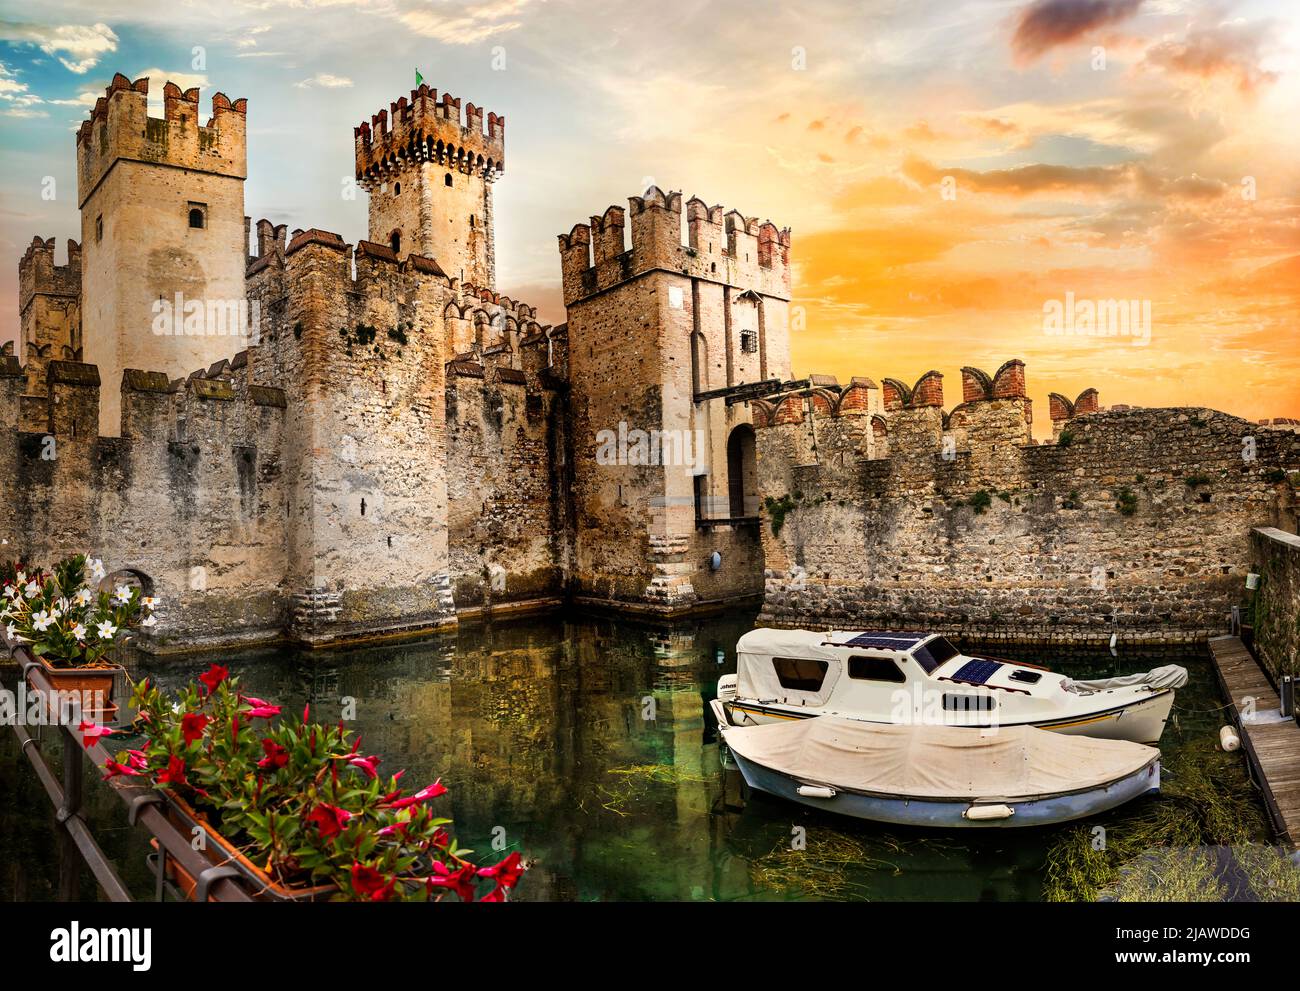 Die schönsten mittelalterlichen Burgen Italiens - Scaligero Castle in Sirmione. Lago di Garda im Norden, Lombardei Stockfoto